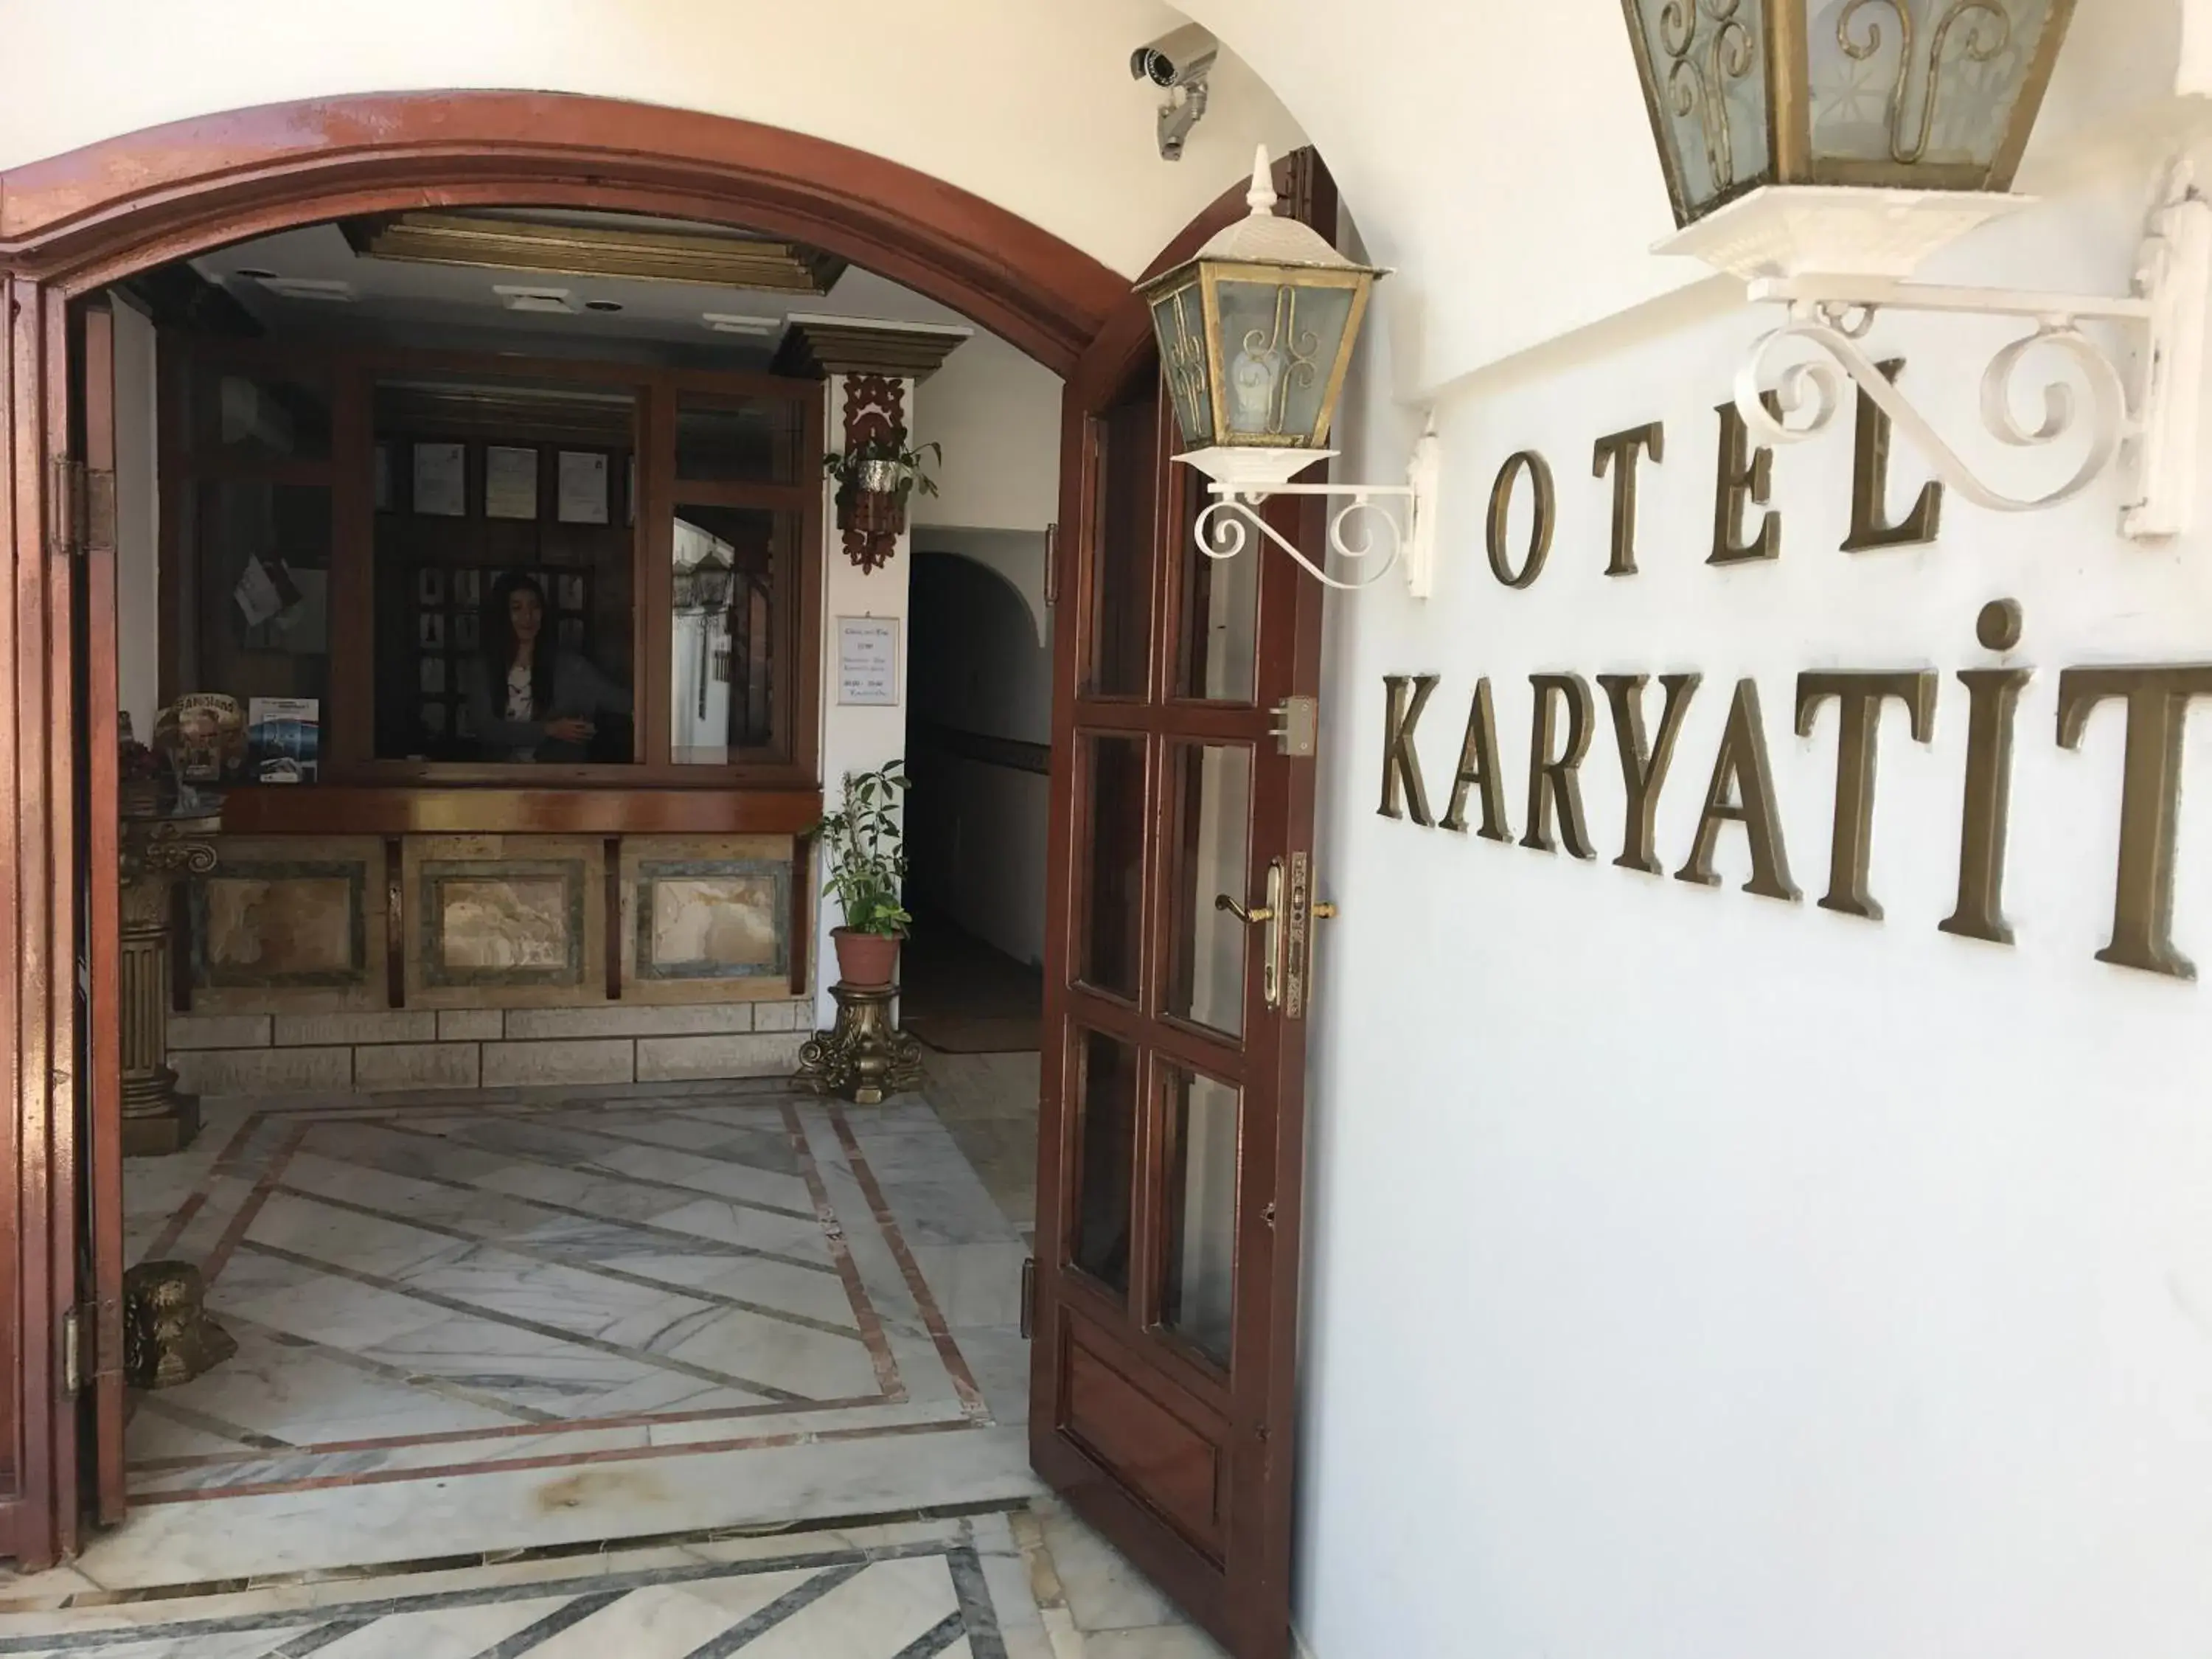 Decorative detail in Hotel Karyatit Kaleici